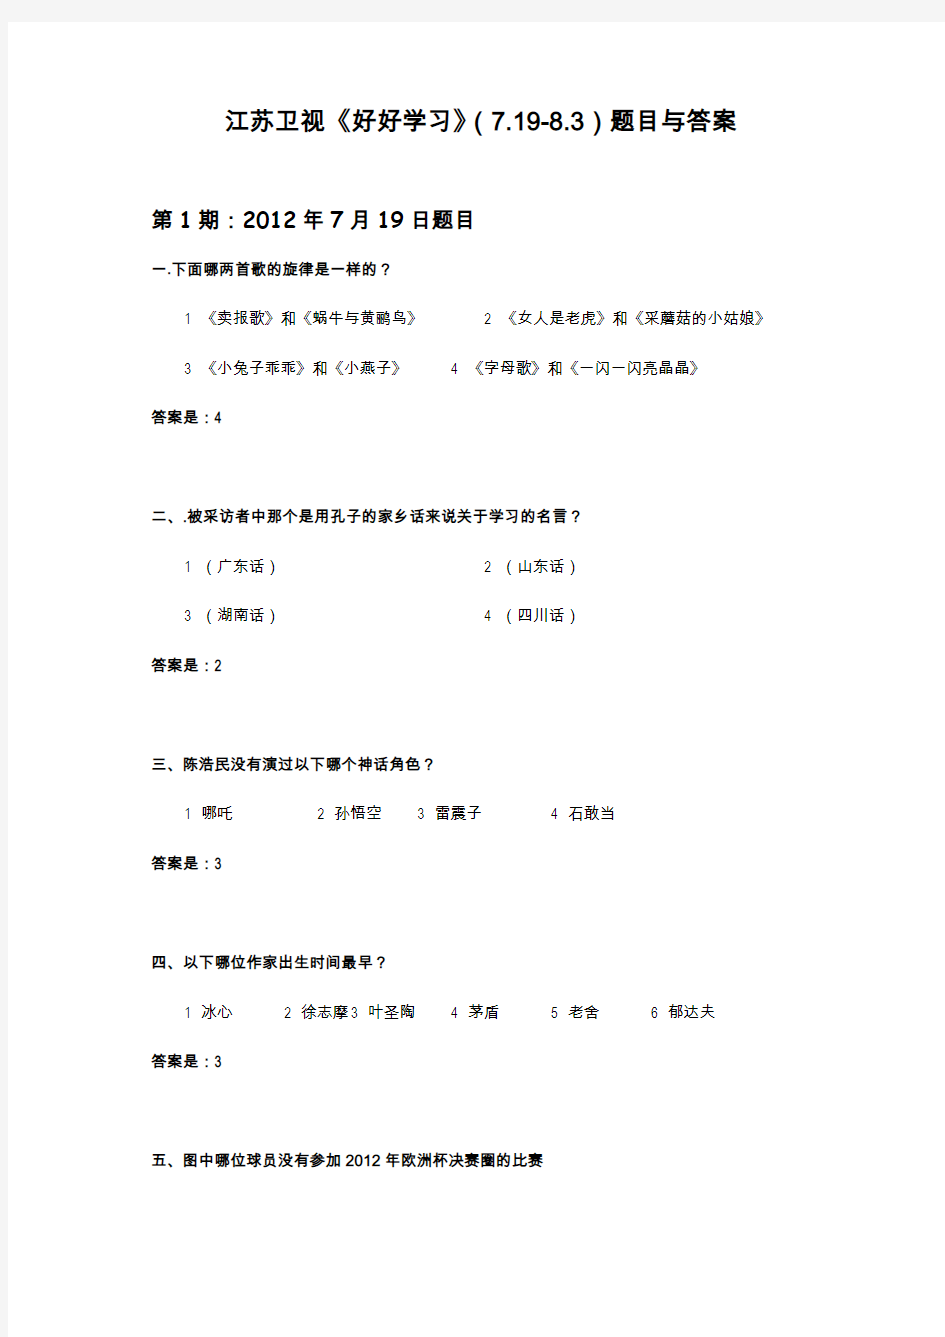 知鸣推荐：江苏卫视《好好学习》第1-11期题目及答案(7.19-8.3)